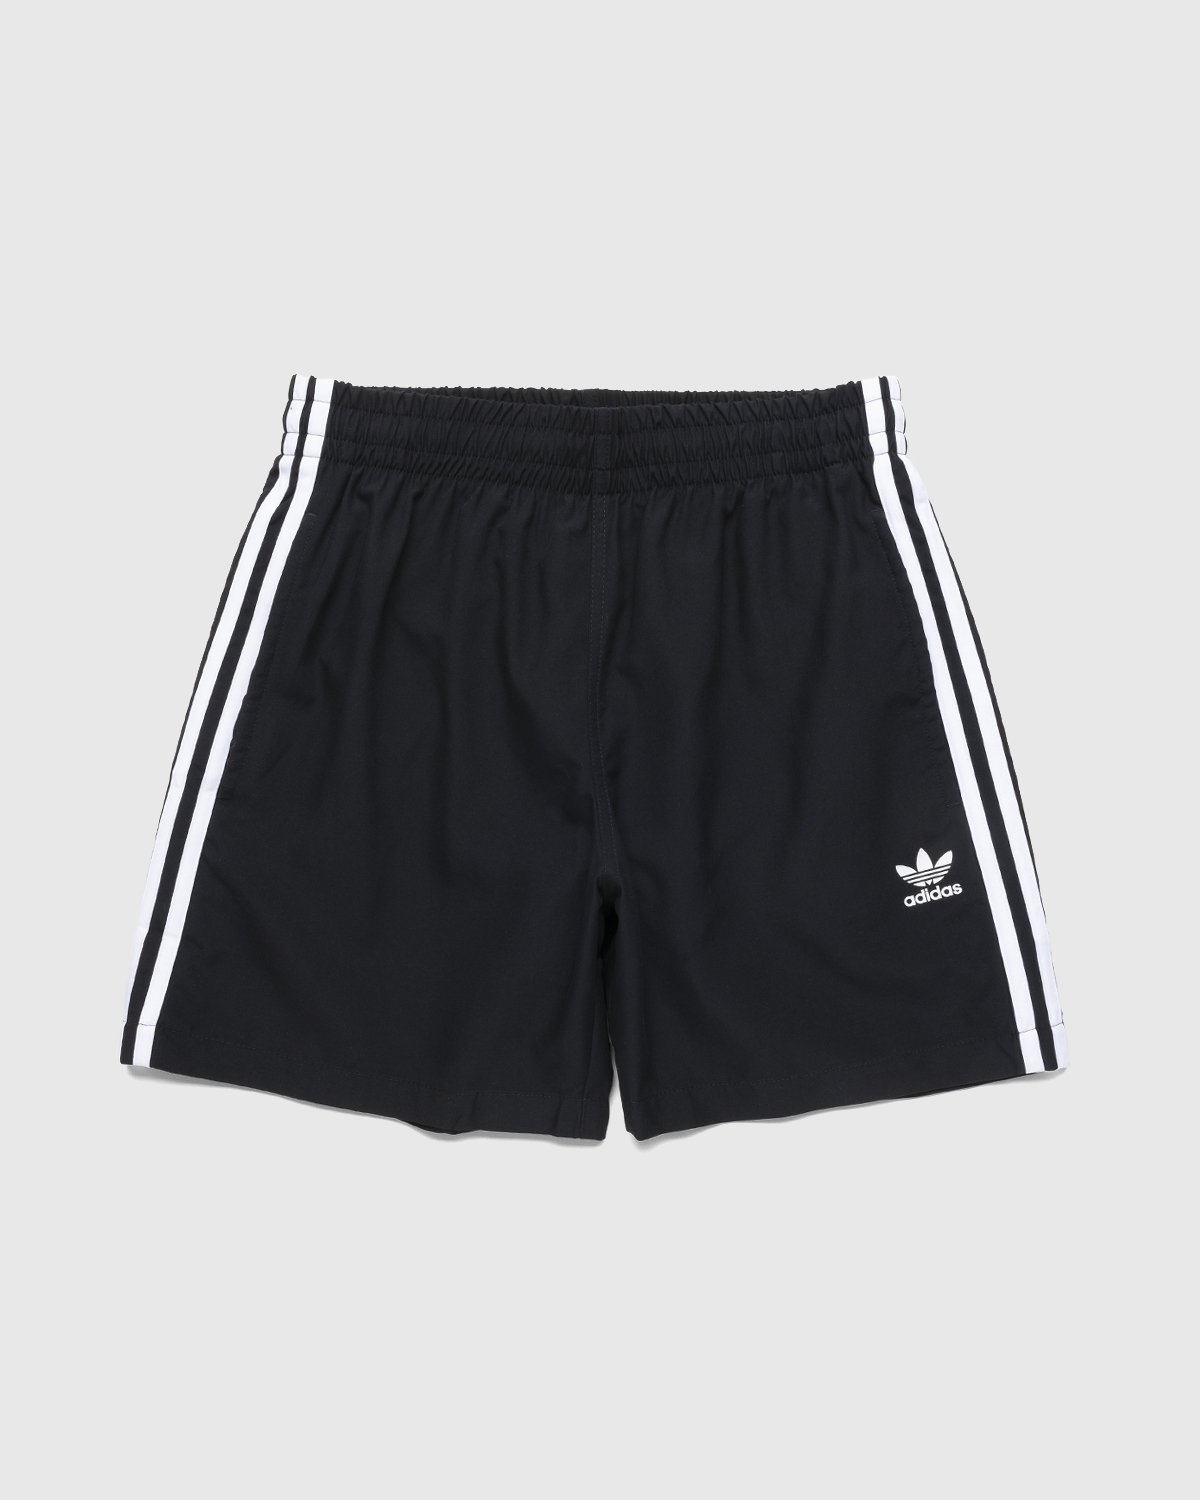 Adidas Classics 3-Stripes Swim Shorts Men's Sports Black H06701 Size  Large L